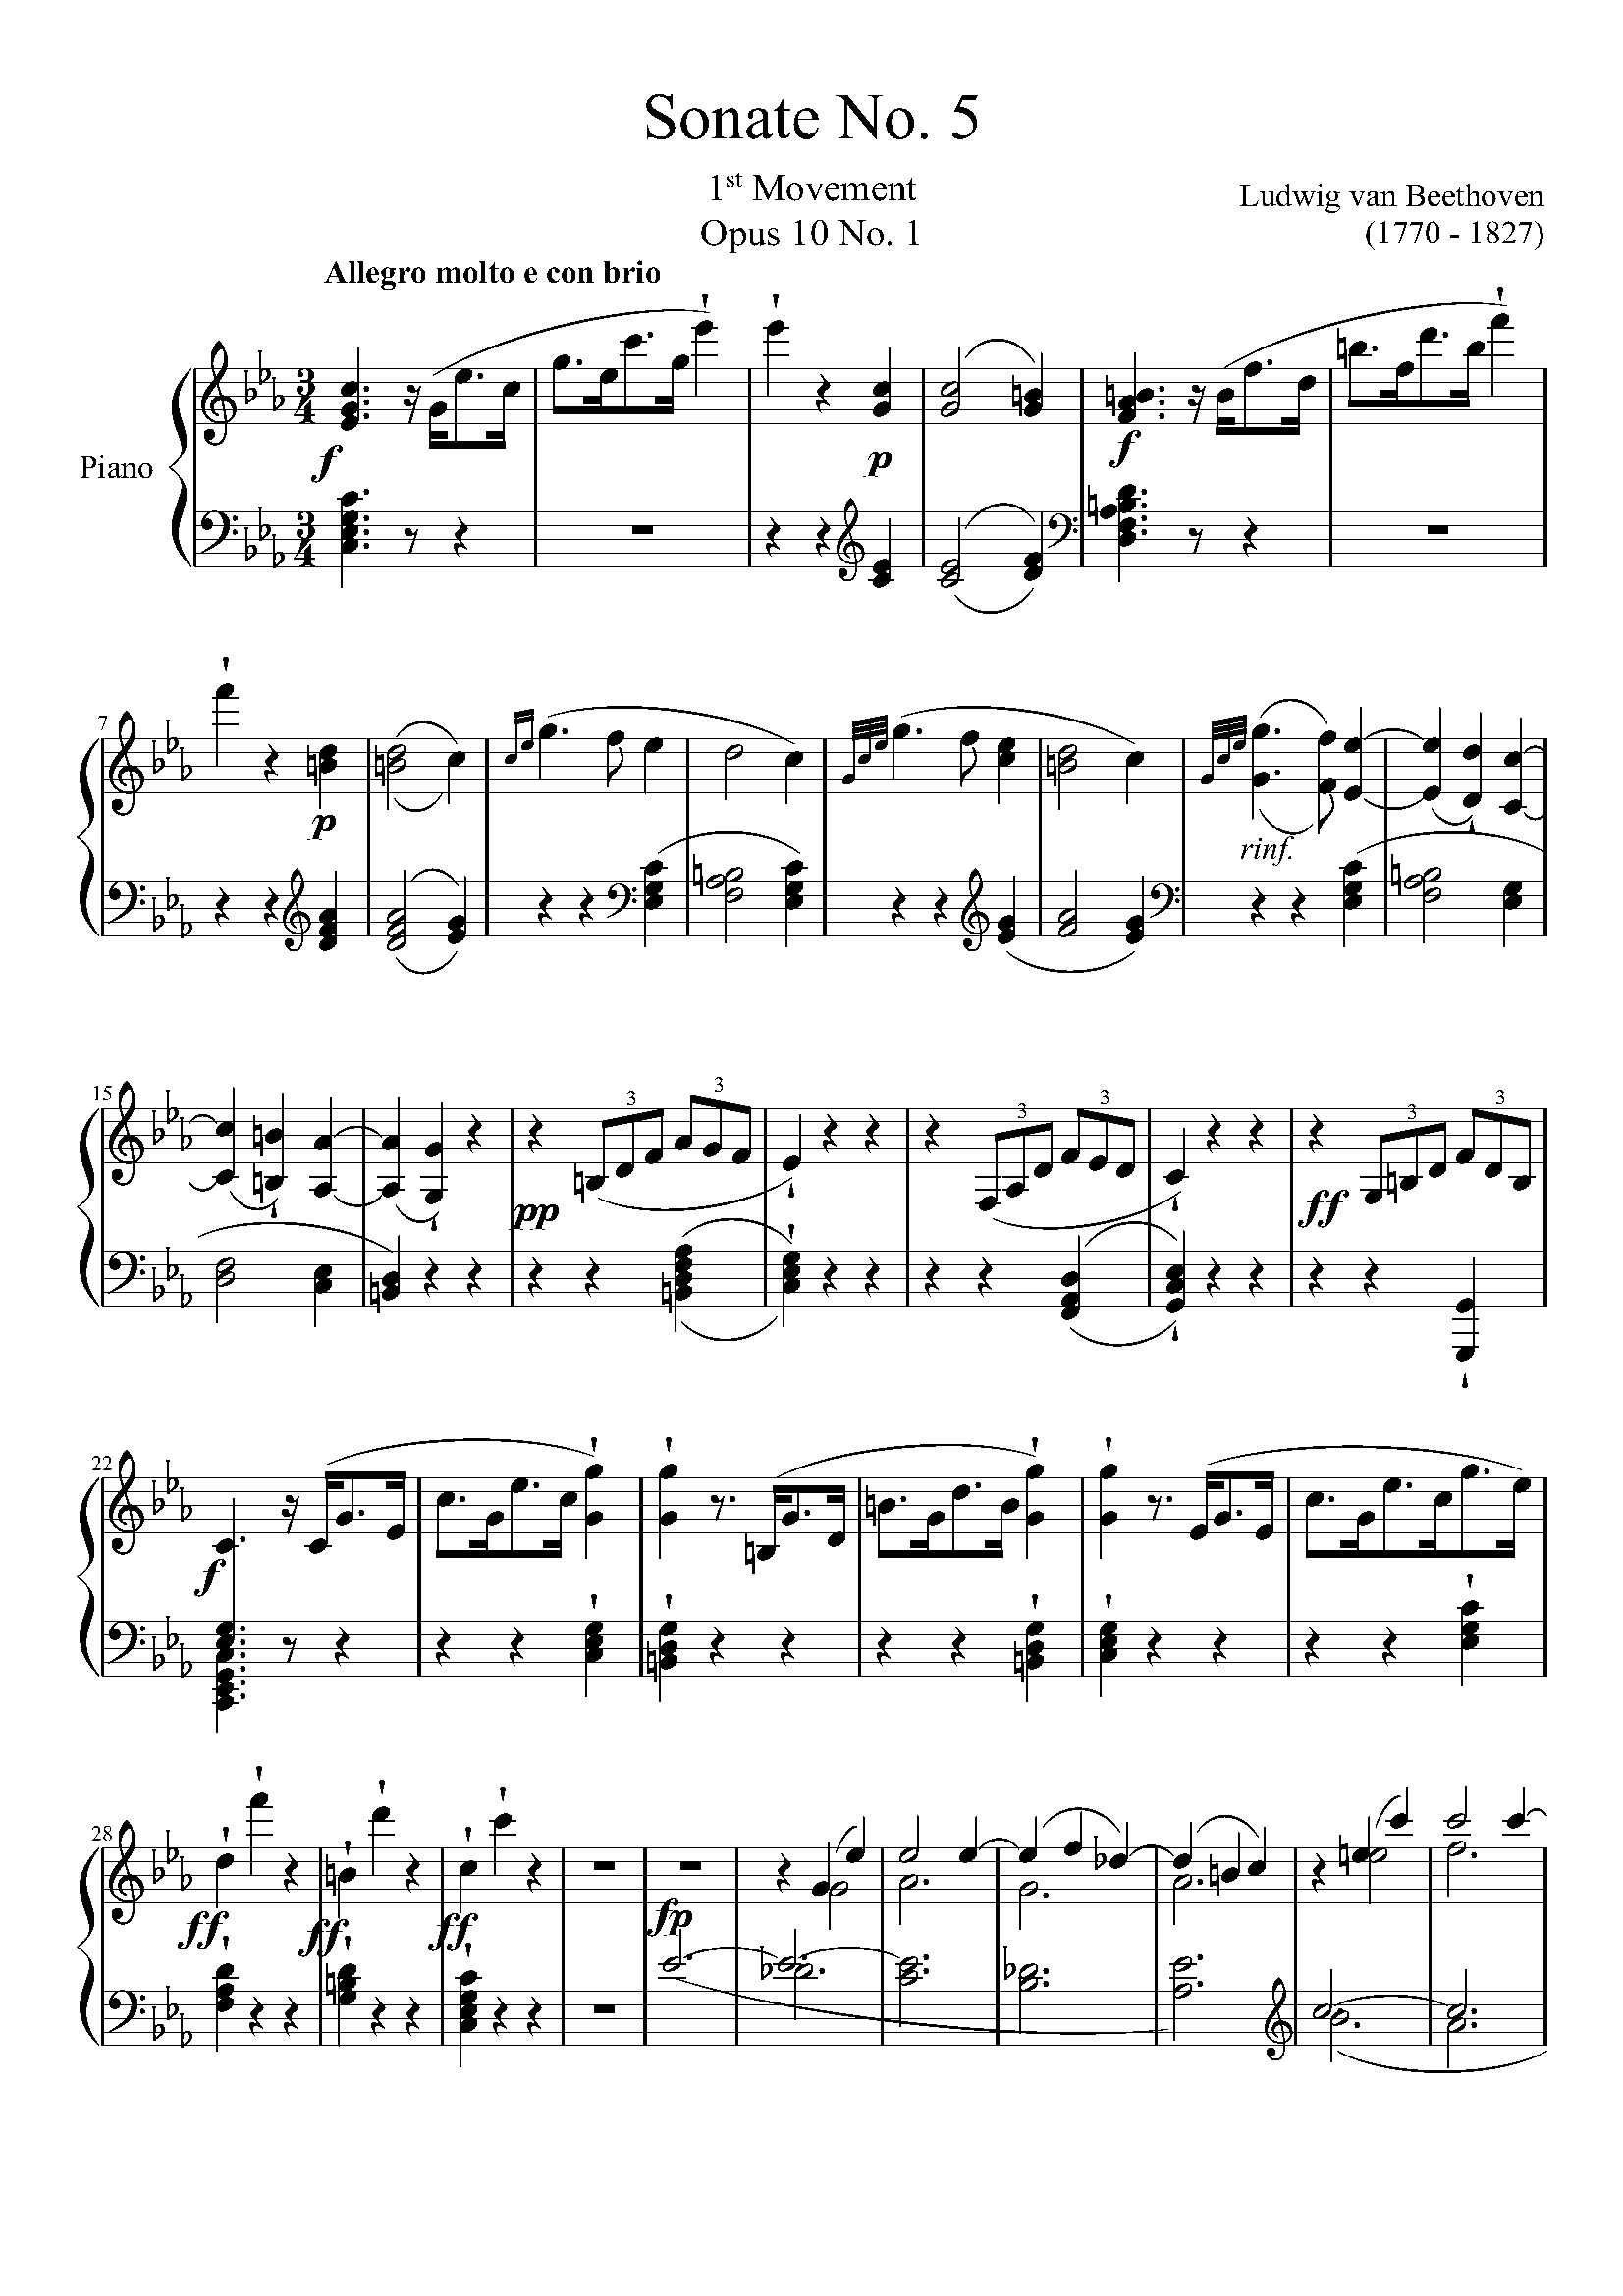 贝多芬钢琴奏鸣曲全集版本(贝多芬钢琴奏鸣曲乐谱的版本)